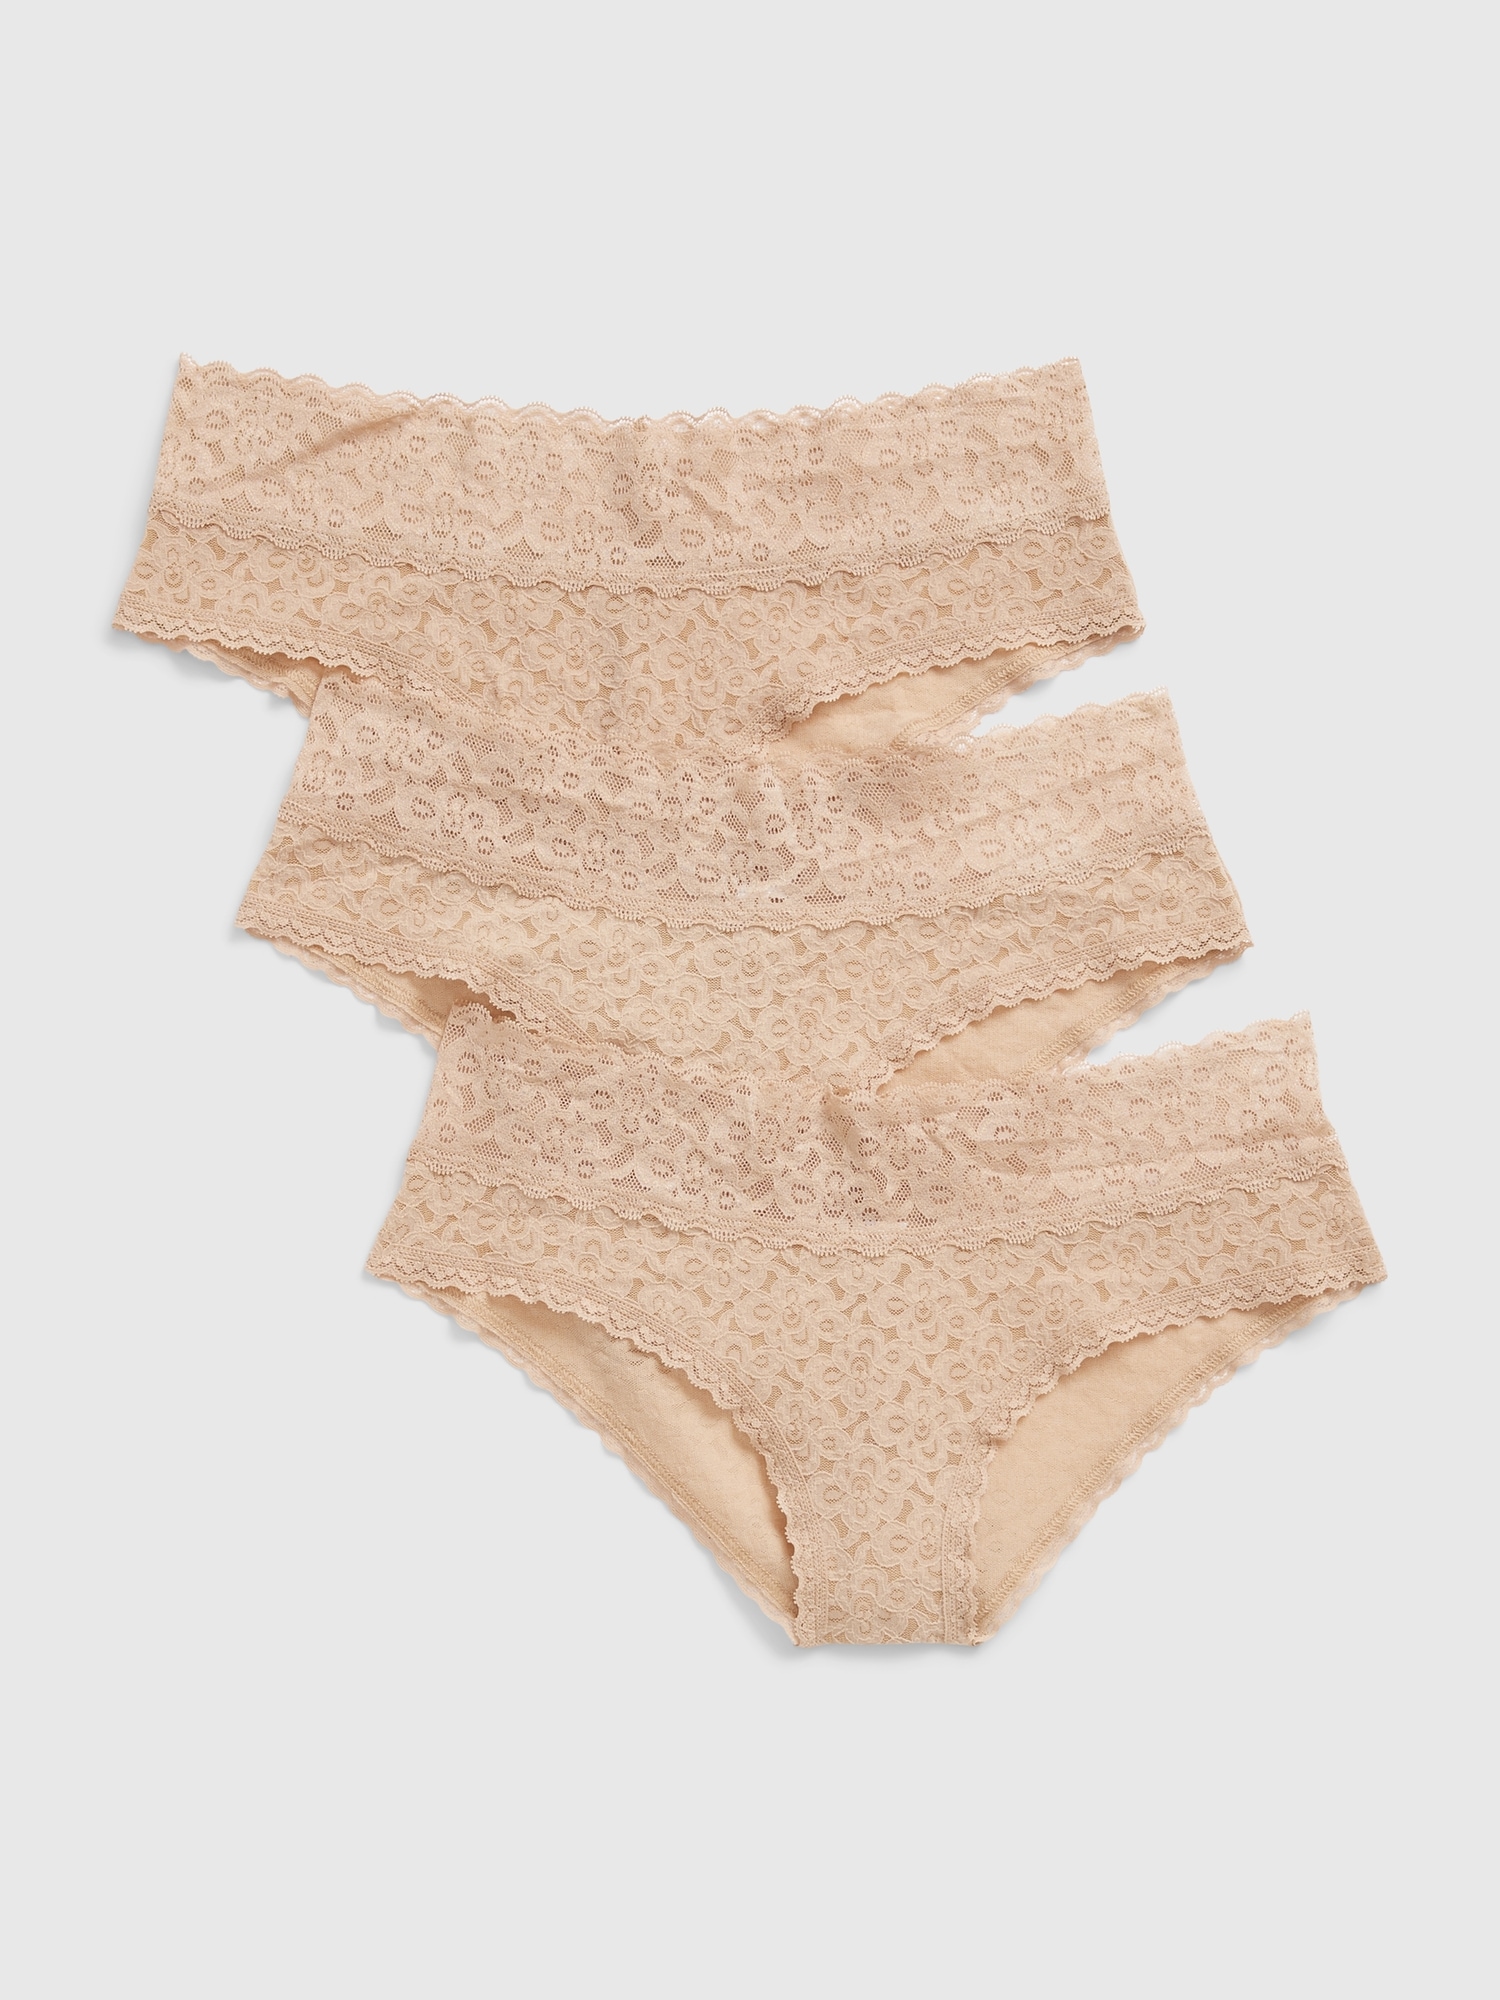 GAP Women's 3-Pack Lace Cheeky Underpants Underwear